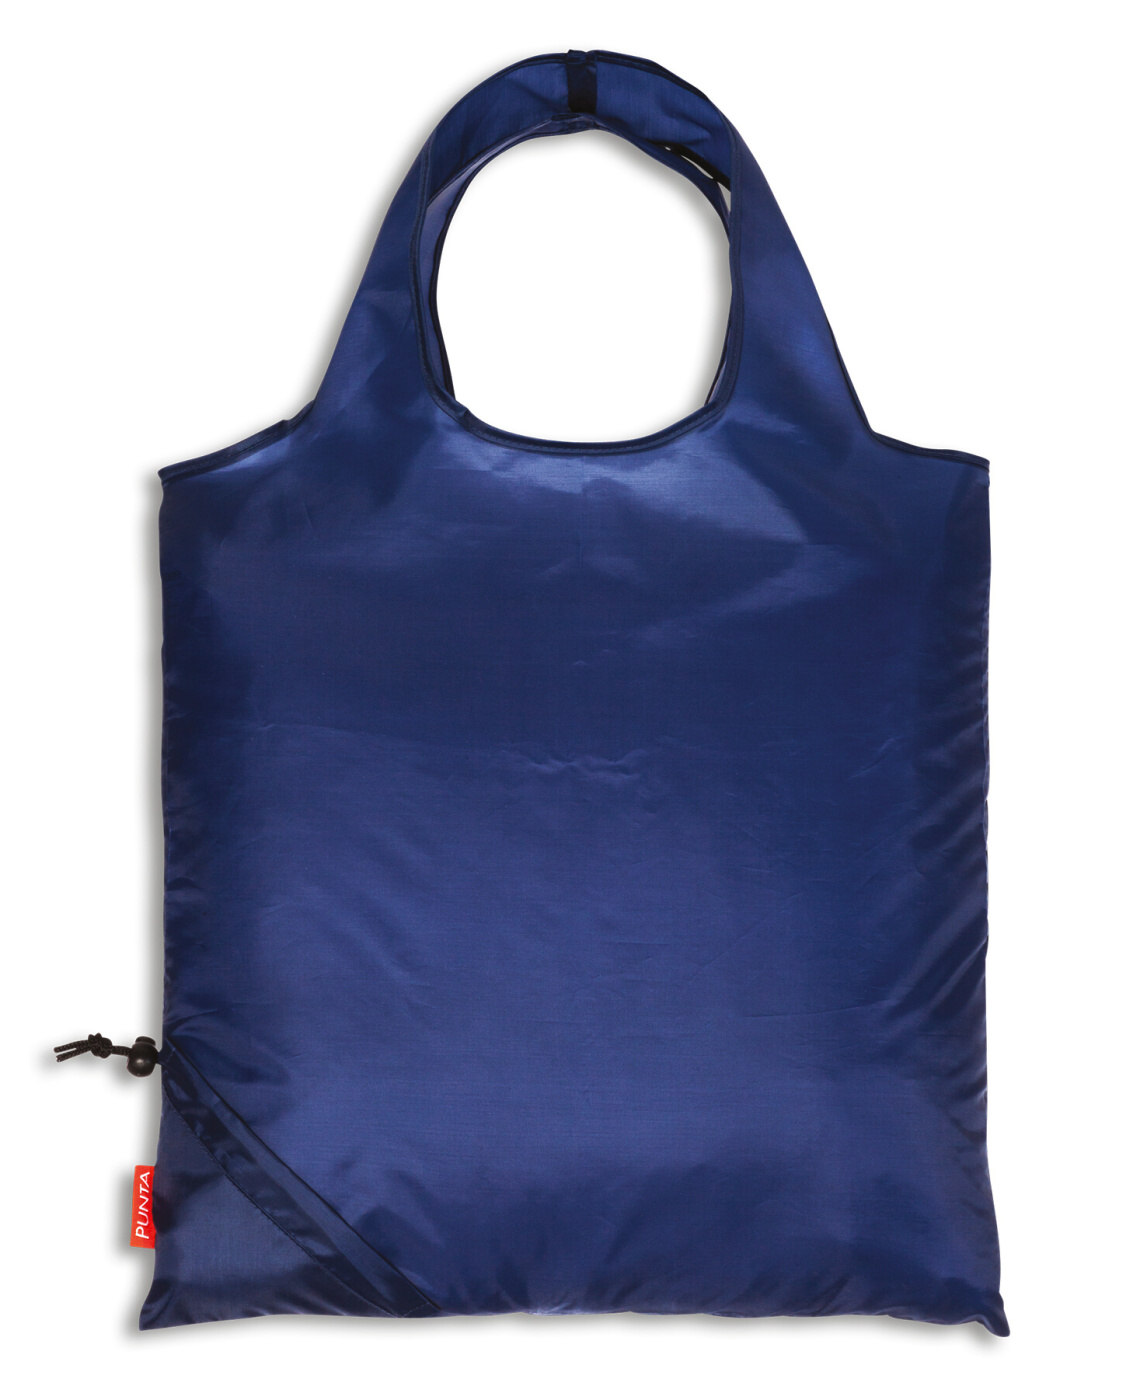 Fabrizio Skládací nákupní taška Punta comfort 10268-0600N 16 L modrá